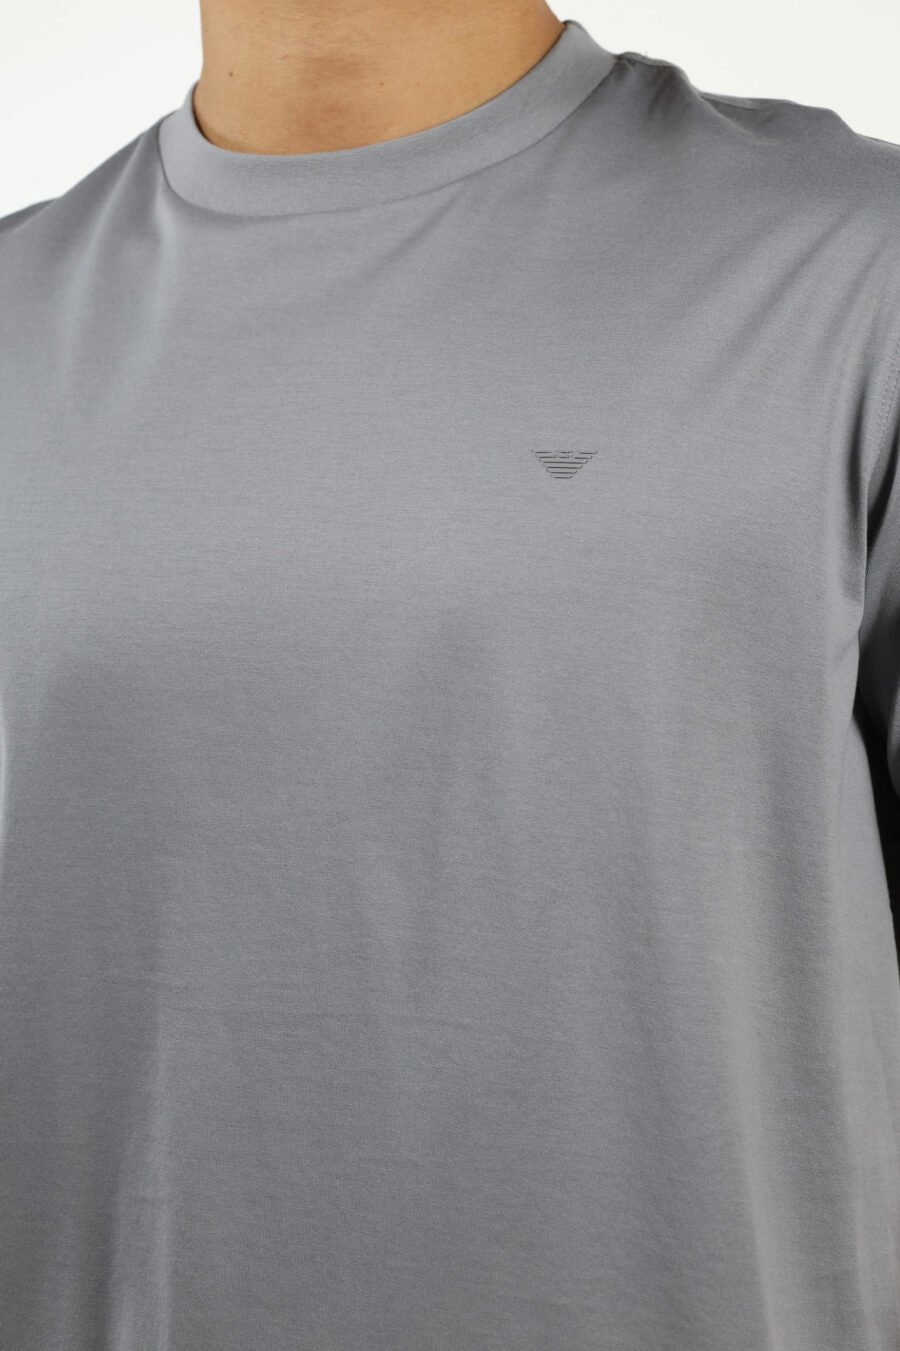 Camiseta gris con minilogo águila - number13514